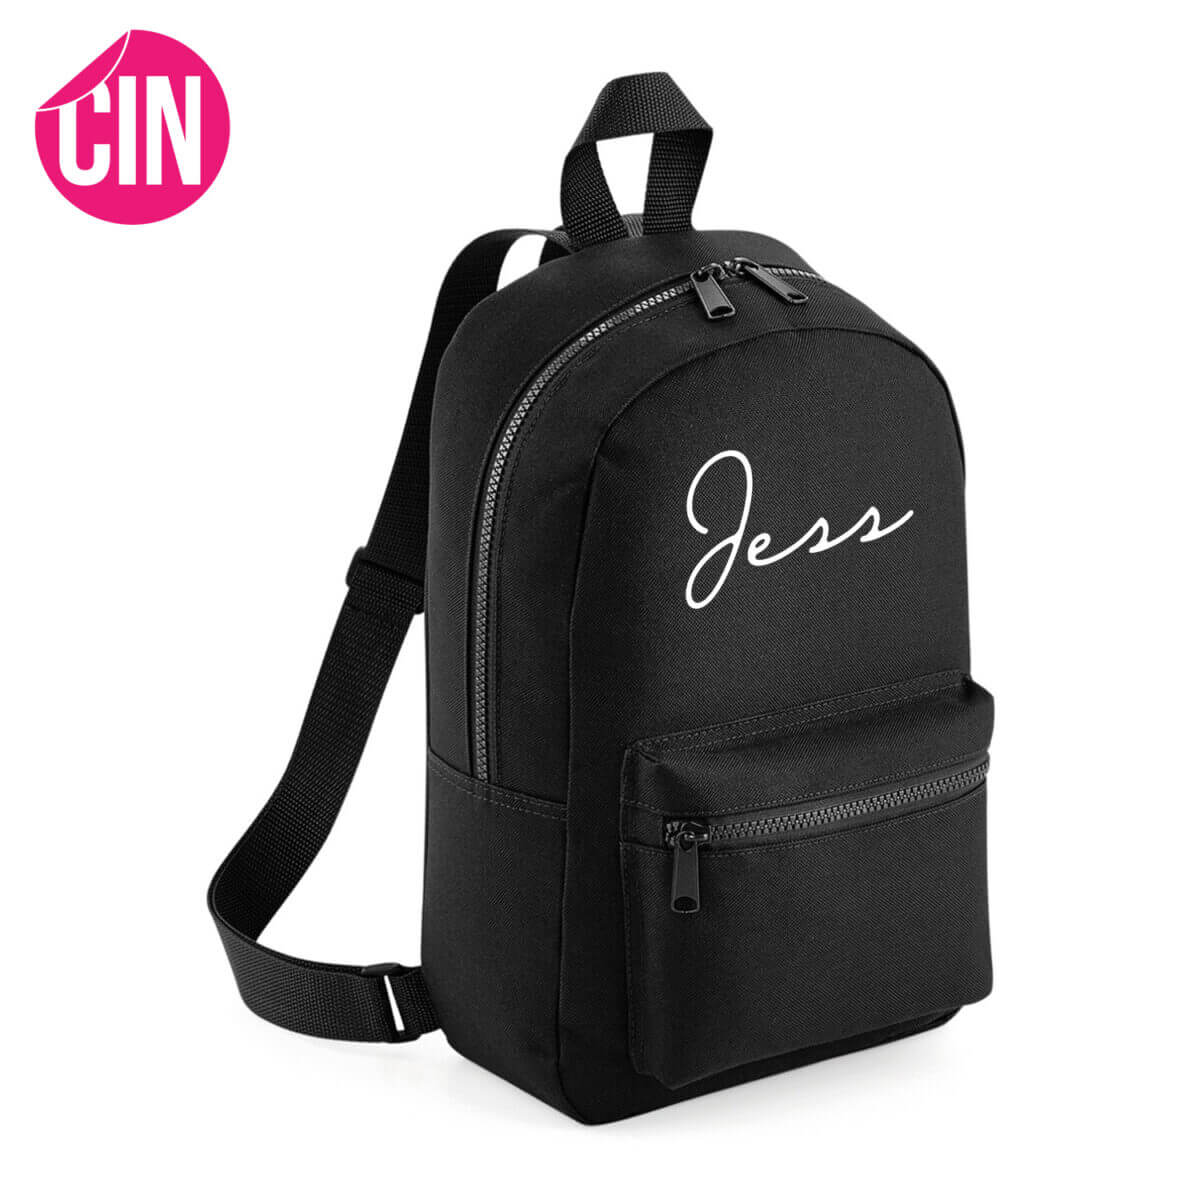 Chique essential mini backpack met naam Cindysigns